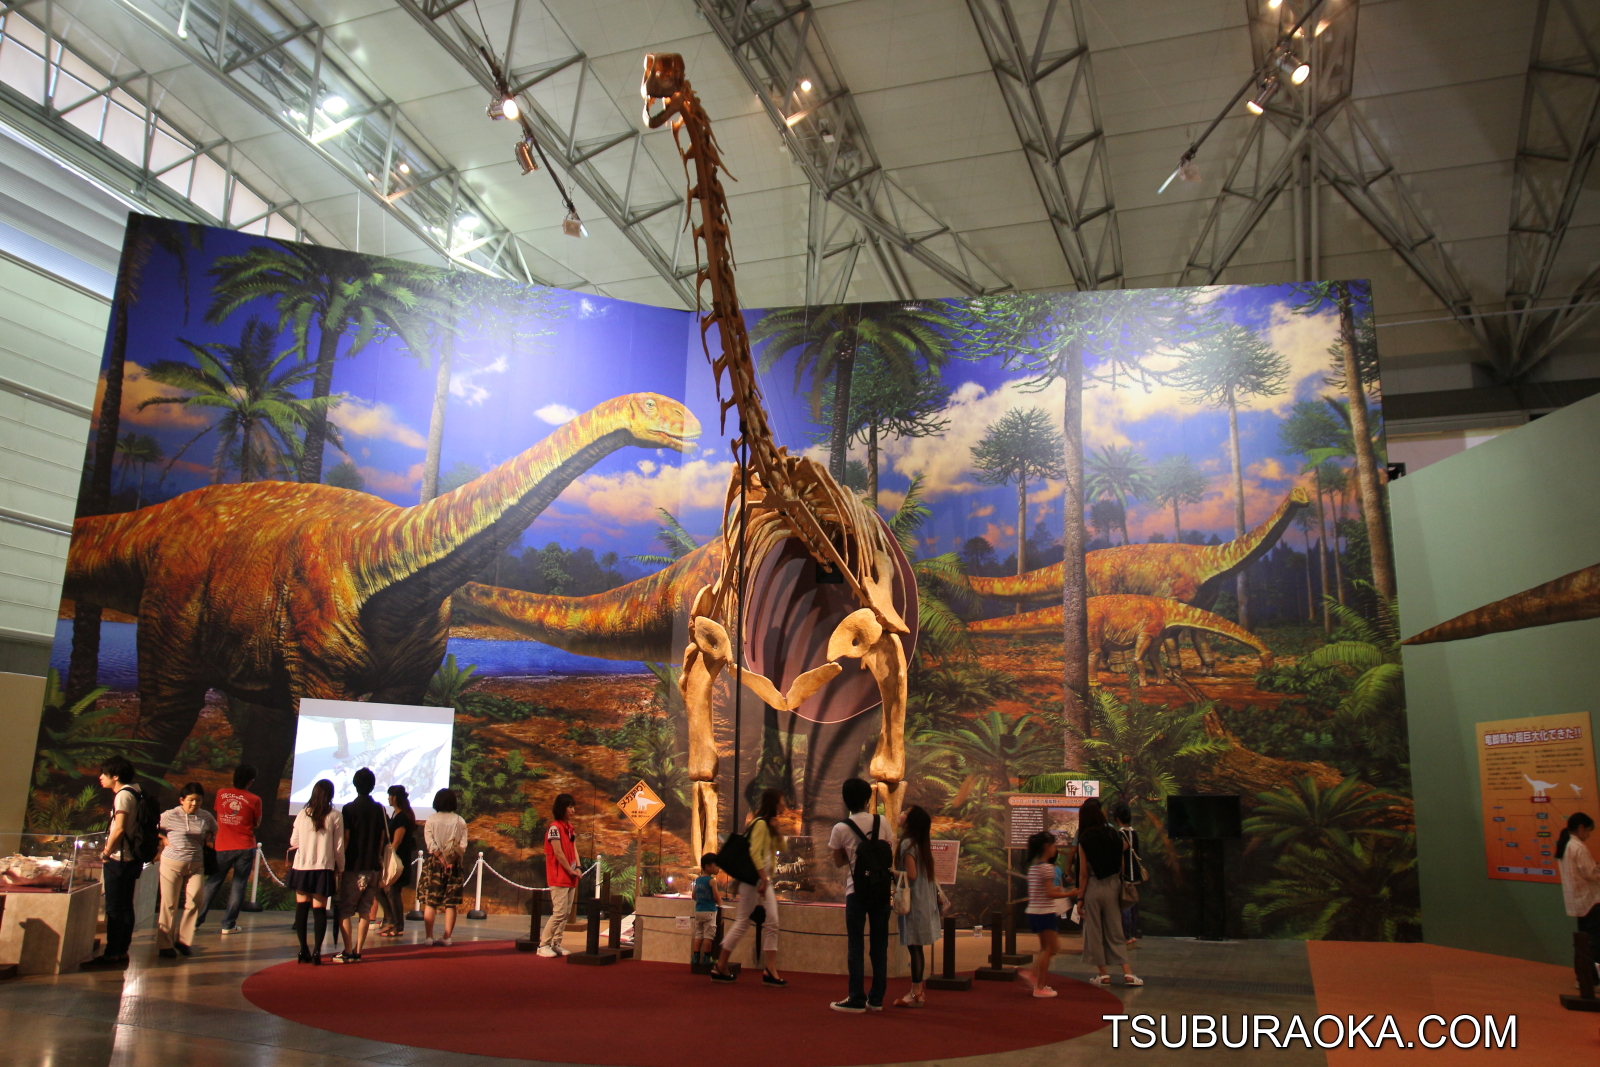 全長30メートルのトゥリアサウルスの復元骨格 半身 は圧巻 幕張メッセのメガ恐竜展は必見 こだわり百貨店 Tsuburaoka Com